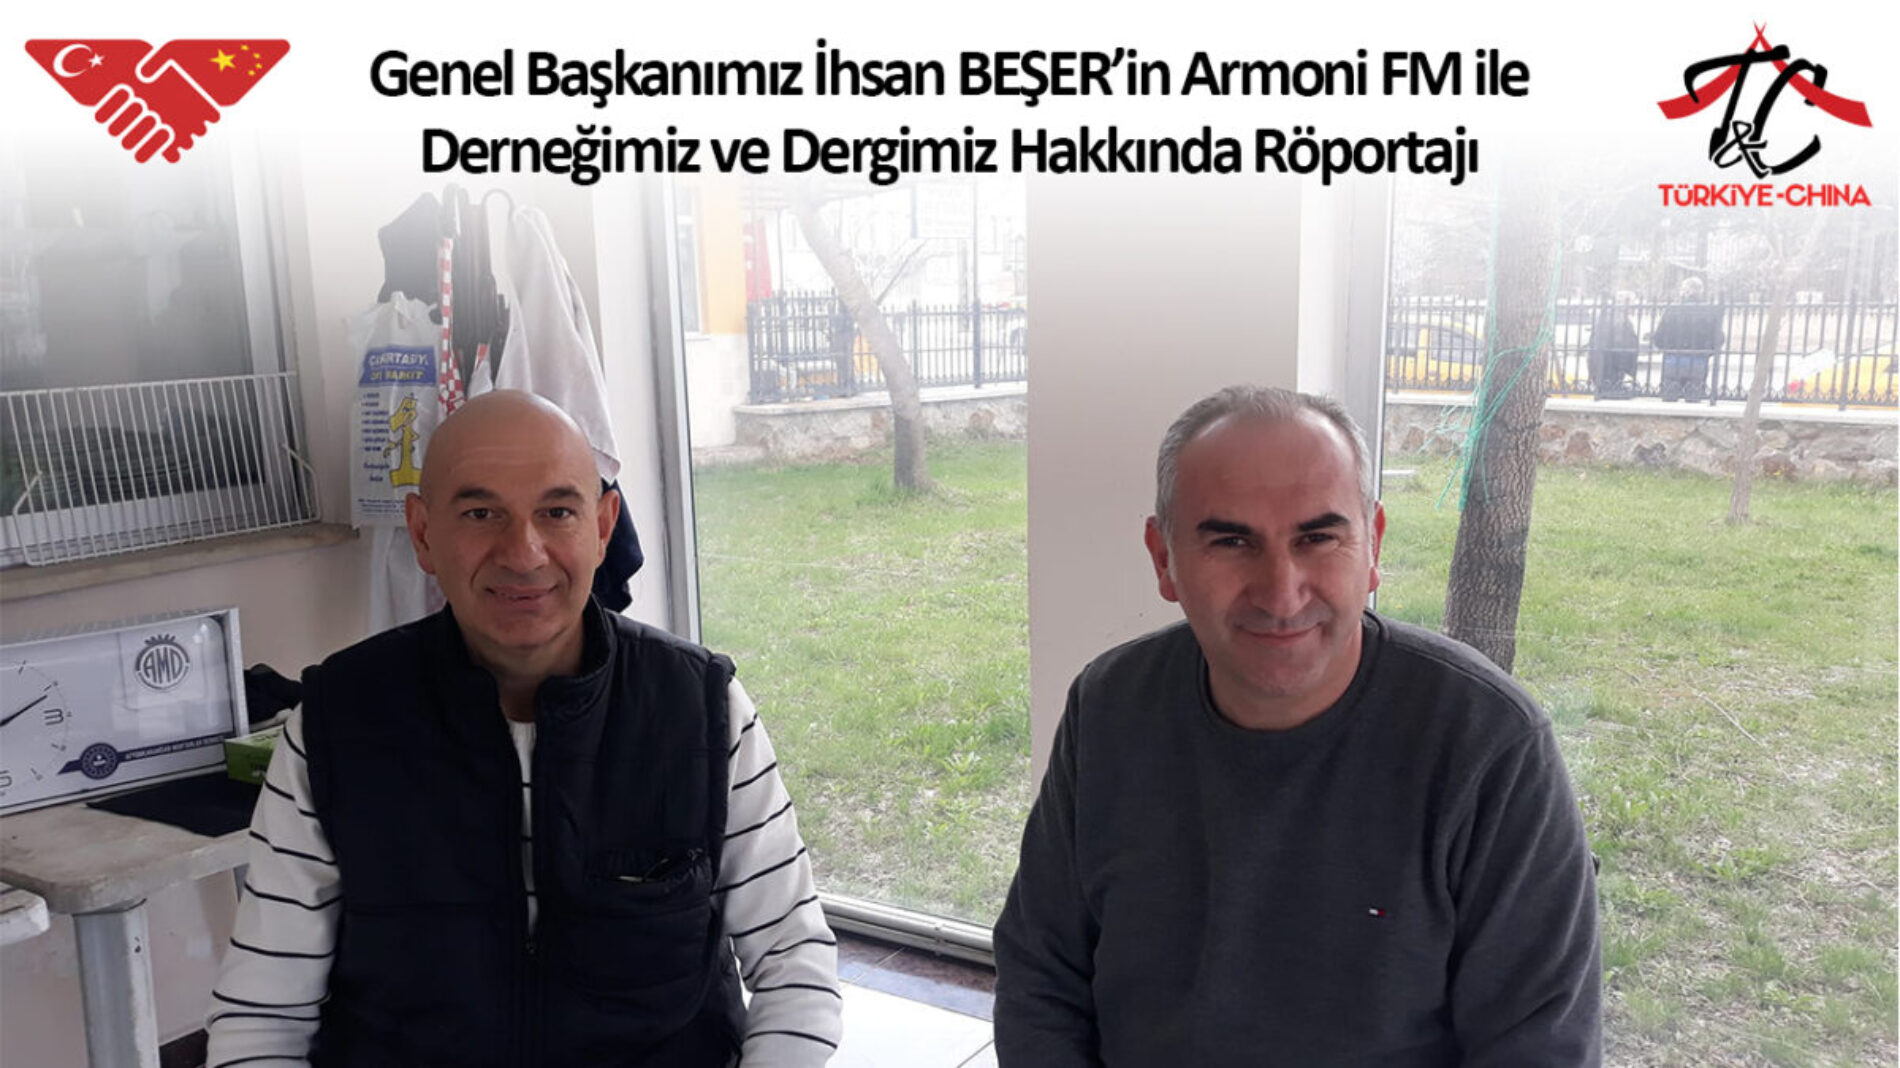 Genel Başkanımız İhsan BEŞER Armoni FM ile Derneğimiz ve Dergimiz Hakkında Röportaj Yaptılar